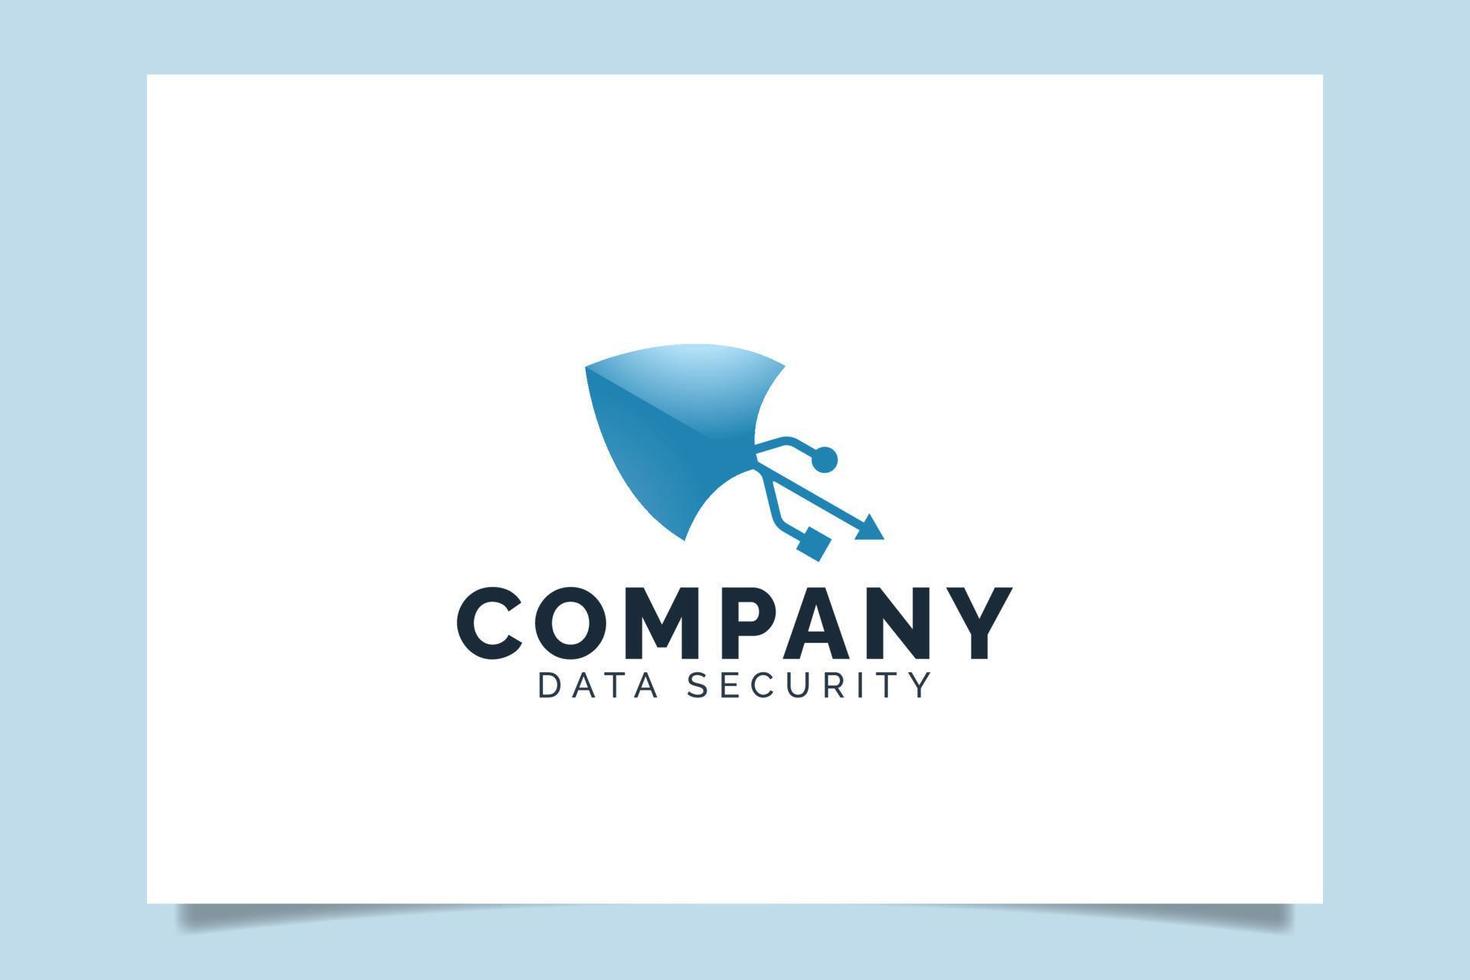 logotipo do escudo de seta que representa o serviço de segurança de dados para qualquer empresa, especialmente para internetm, web, cibernética, finanças, privacidade, etc. vetor